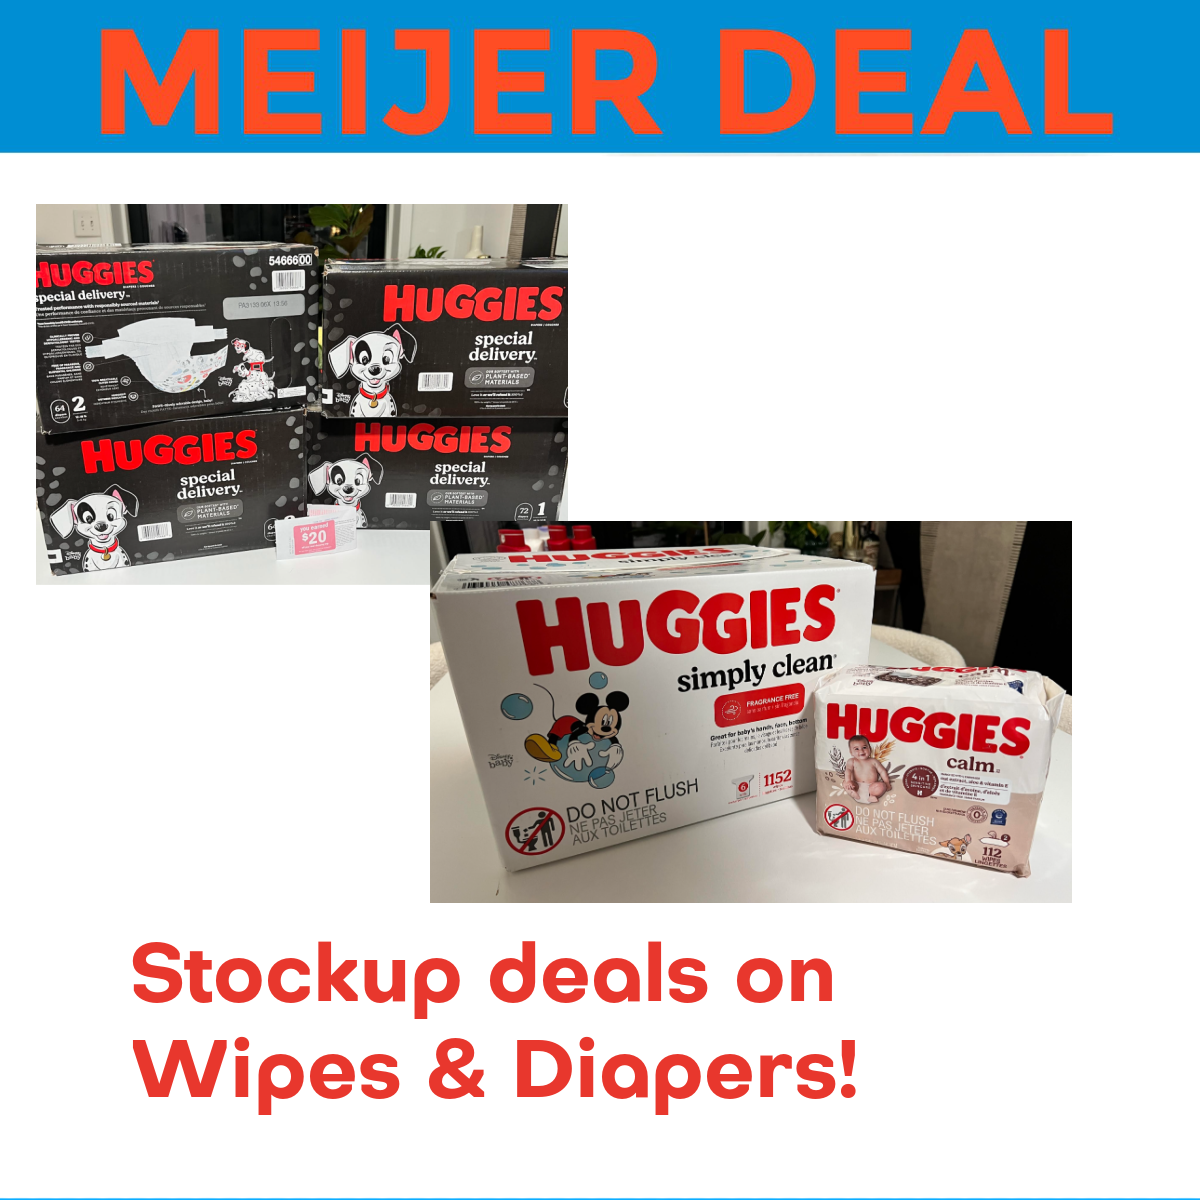 Great deals on Huggies at Meijer this week